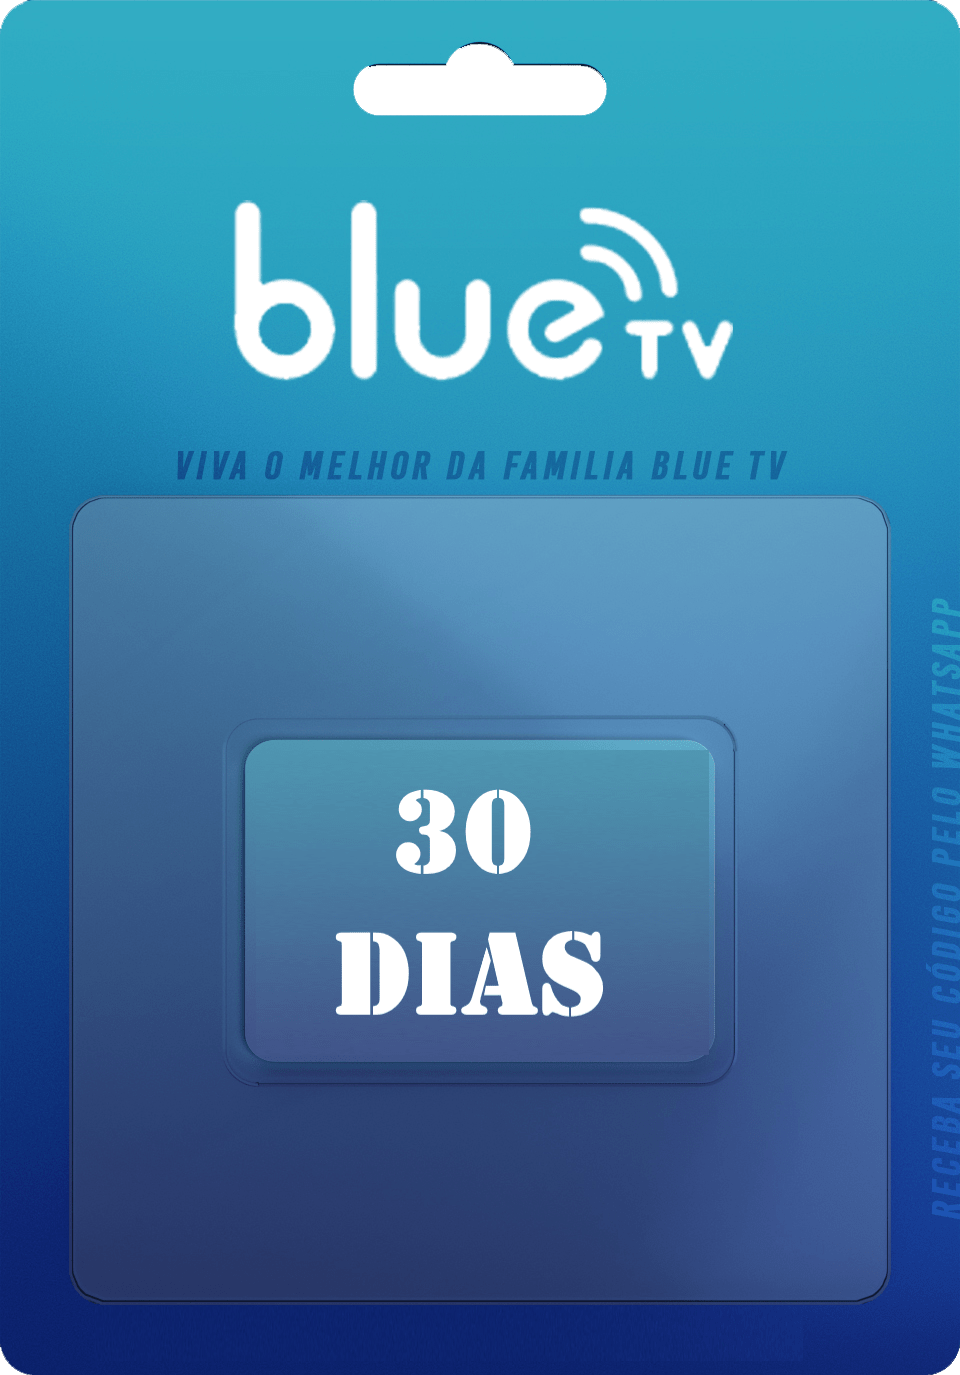 Blue tv Codigo de recarga